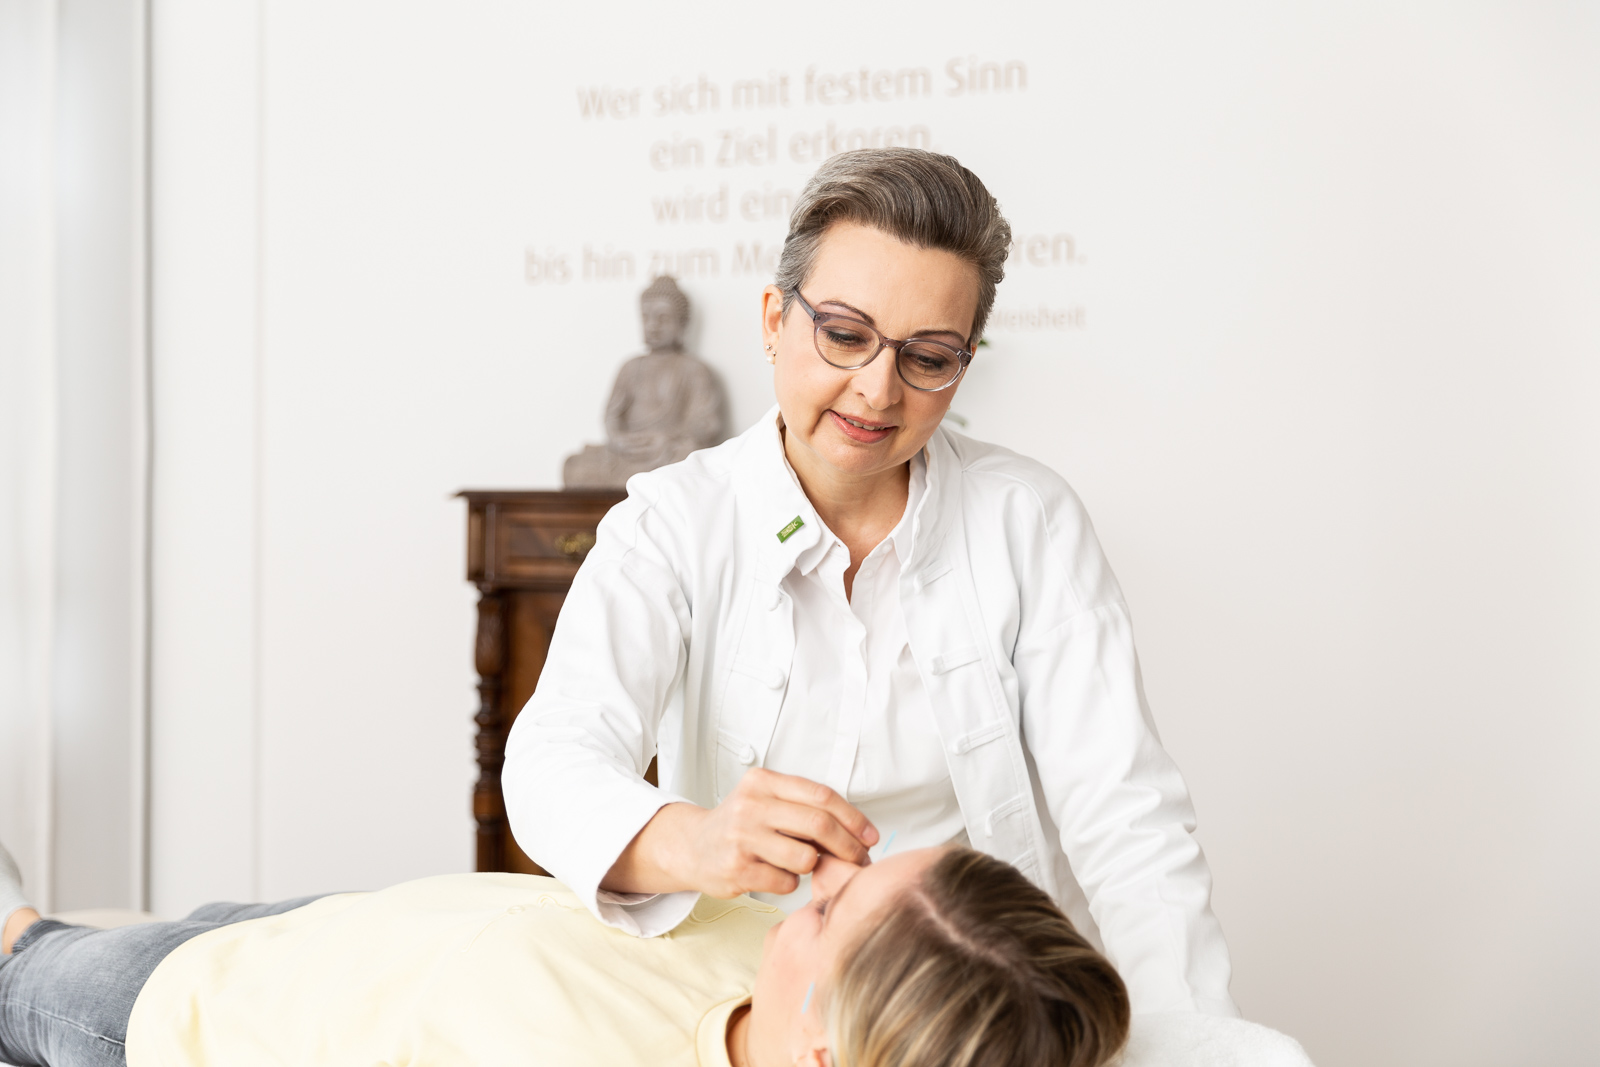 Frau Dr. med. Winckler-Schumann behandelt eine Patientin